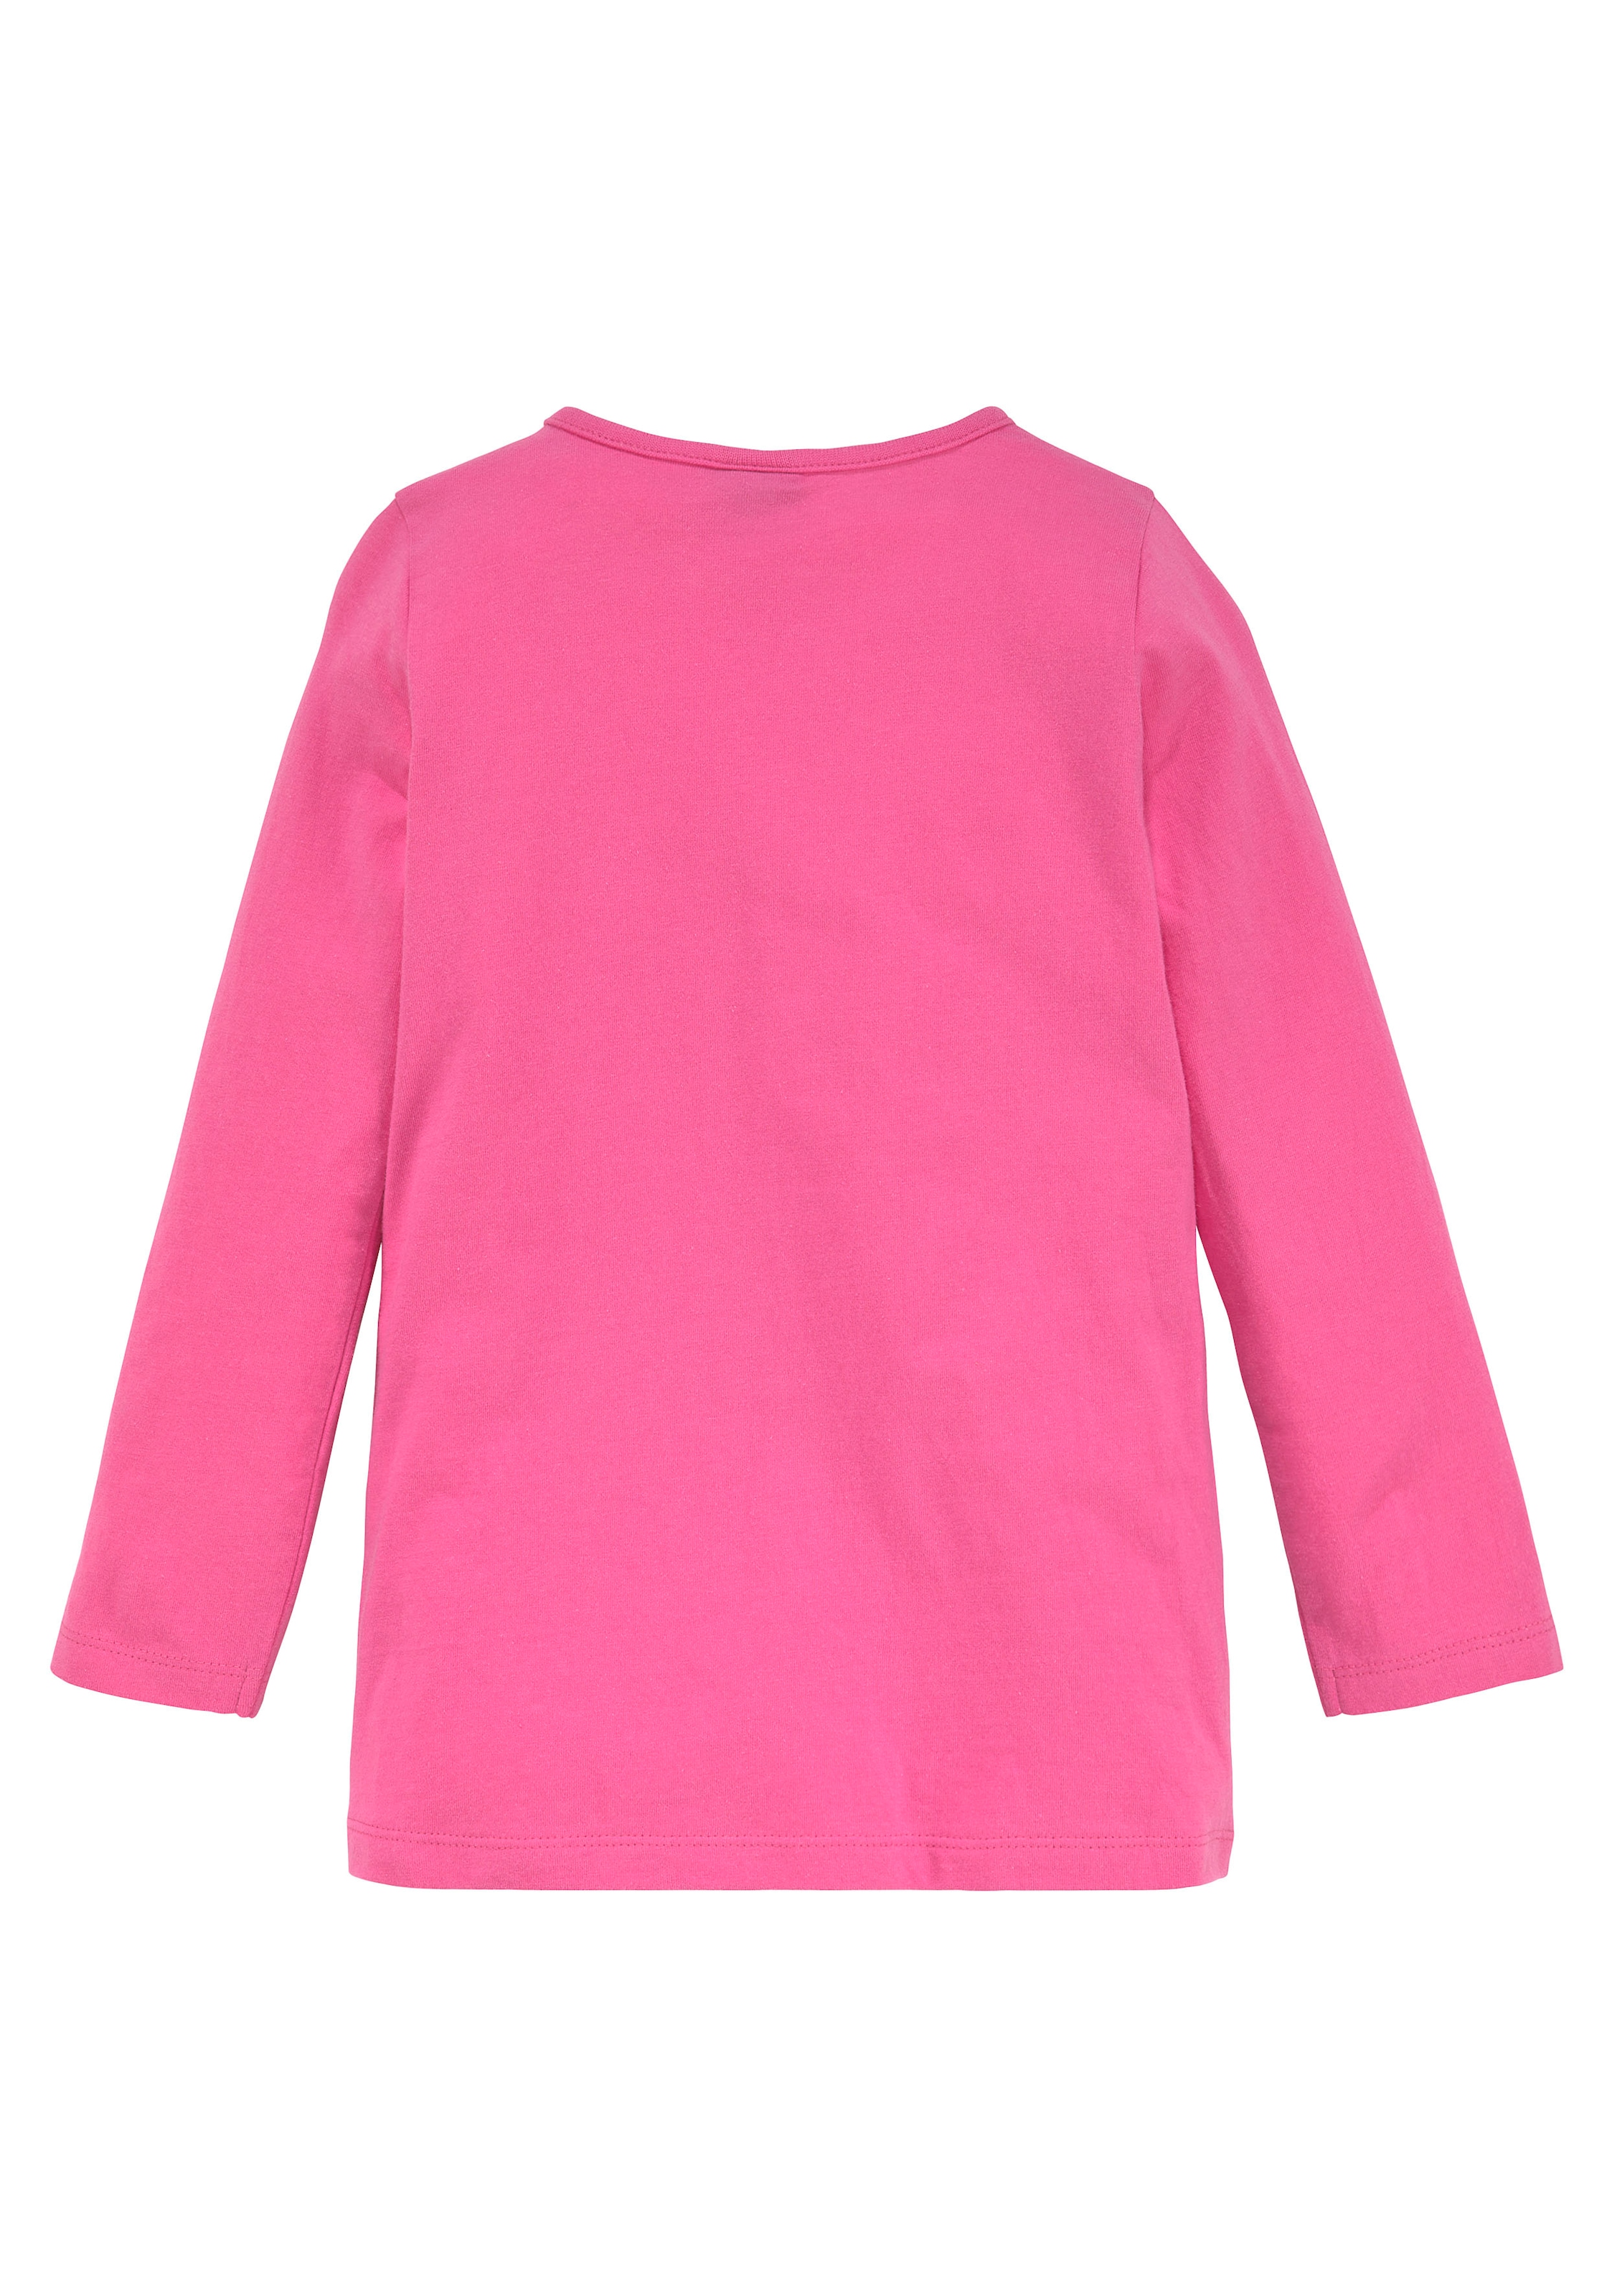 KIDSWORLD Longshirt »für kleine Mädchen«, mit großem Print und schönen Streifen